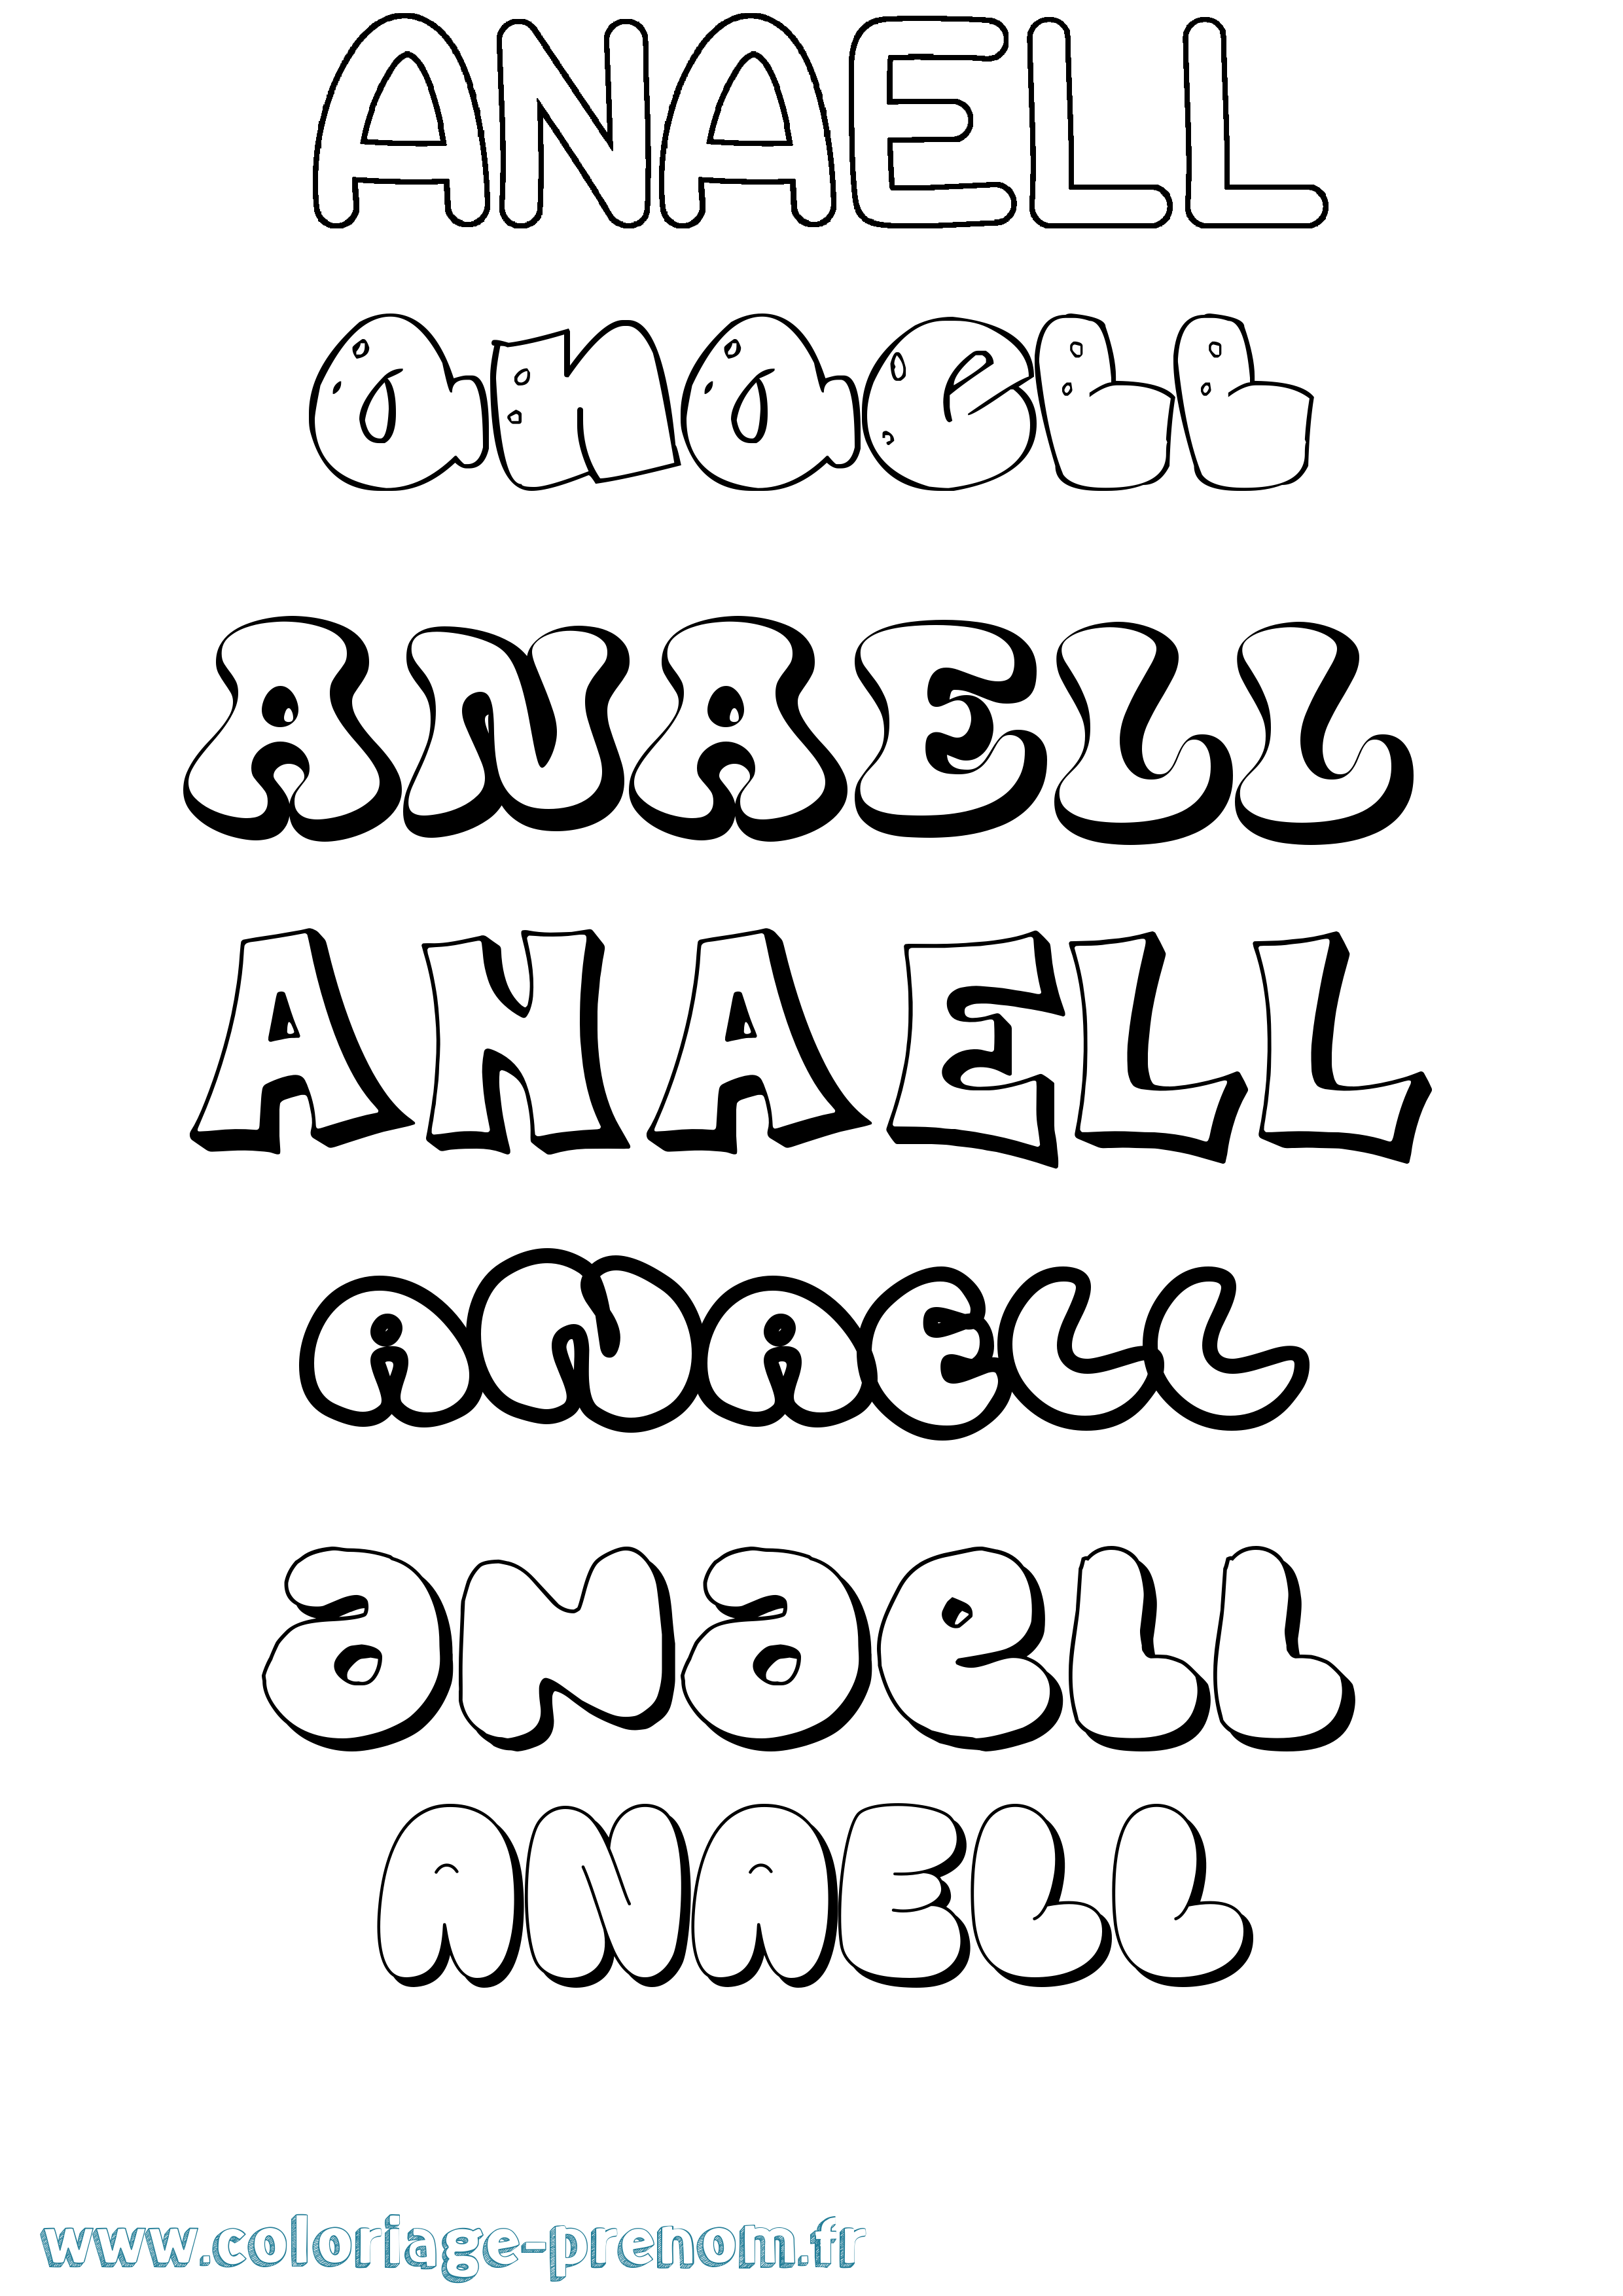 Coloriage prénom Anaell Bubble